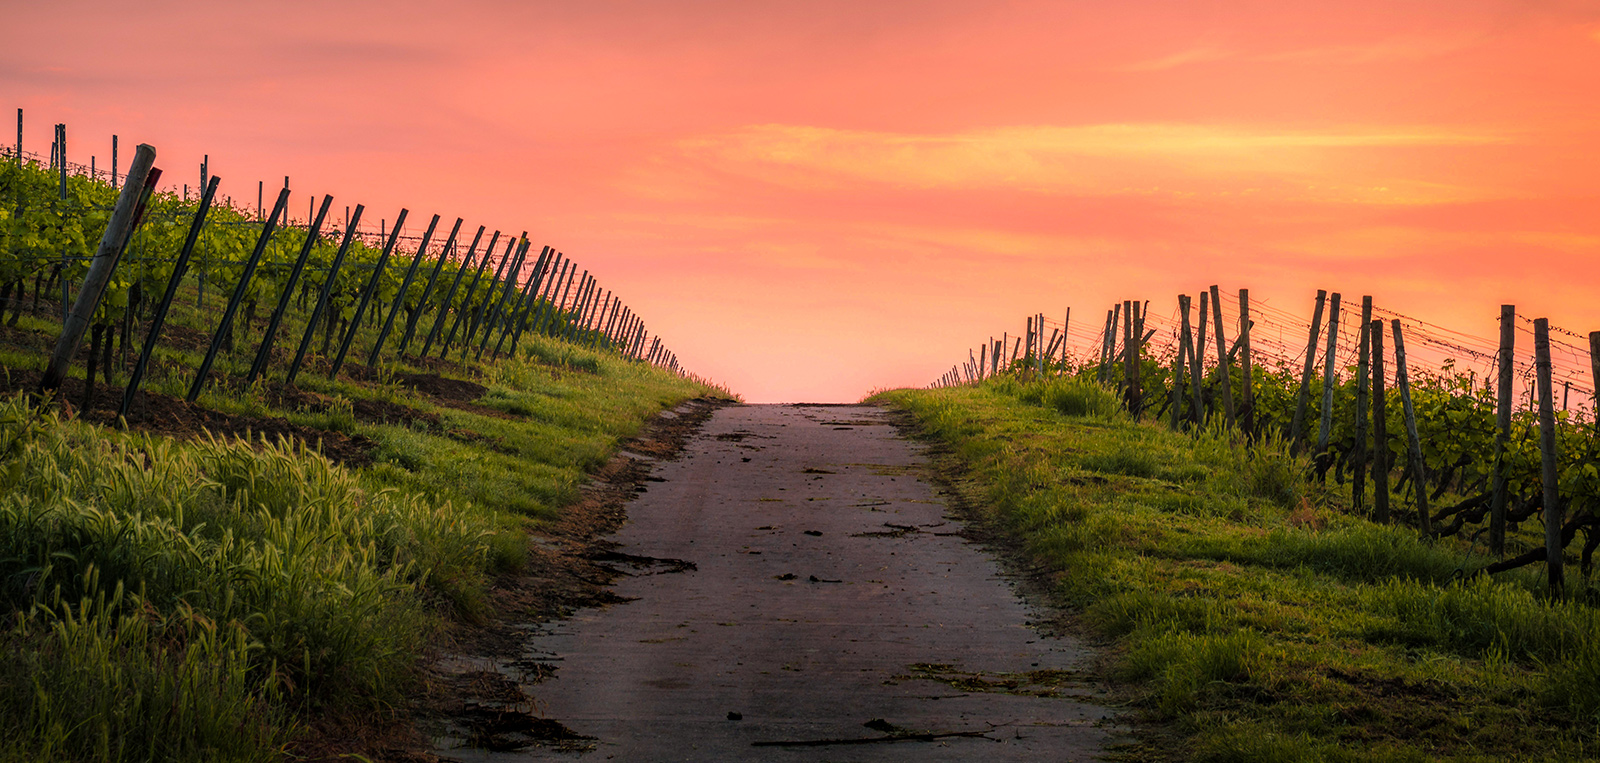 Winery Sunset photo by Header Karstenwurth